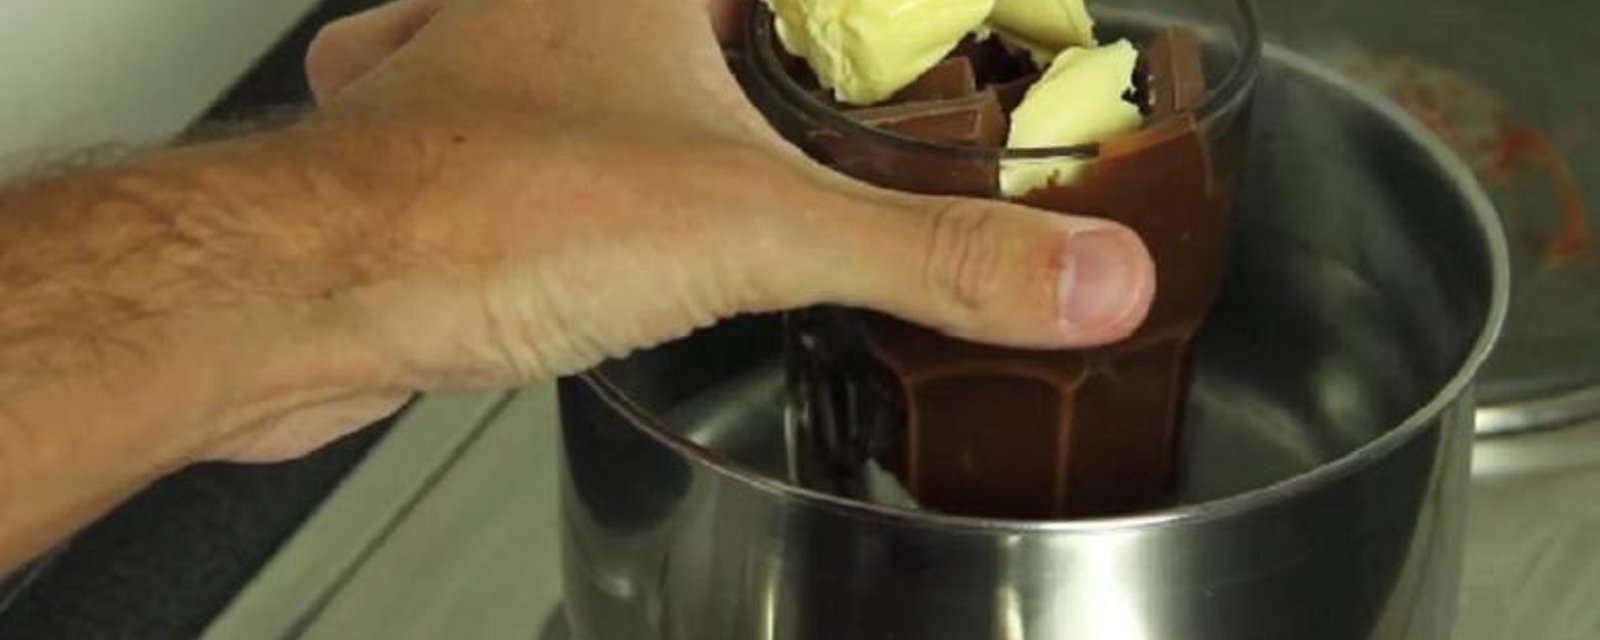 Il fait fondre du chocolat et le mélange à des céréales! Son dessert est à tomber par terre! 